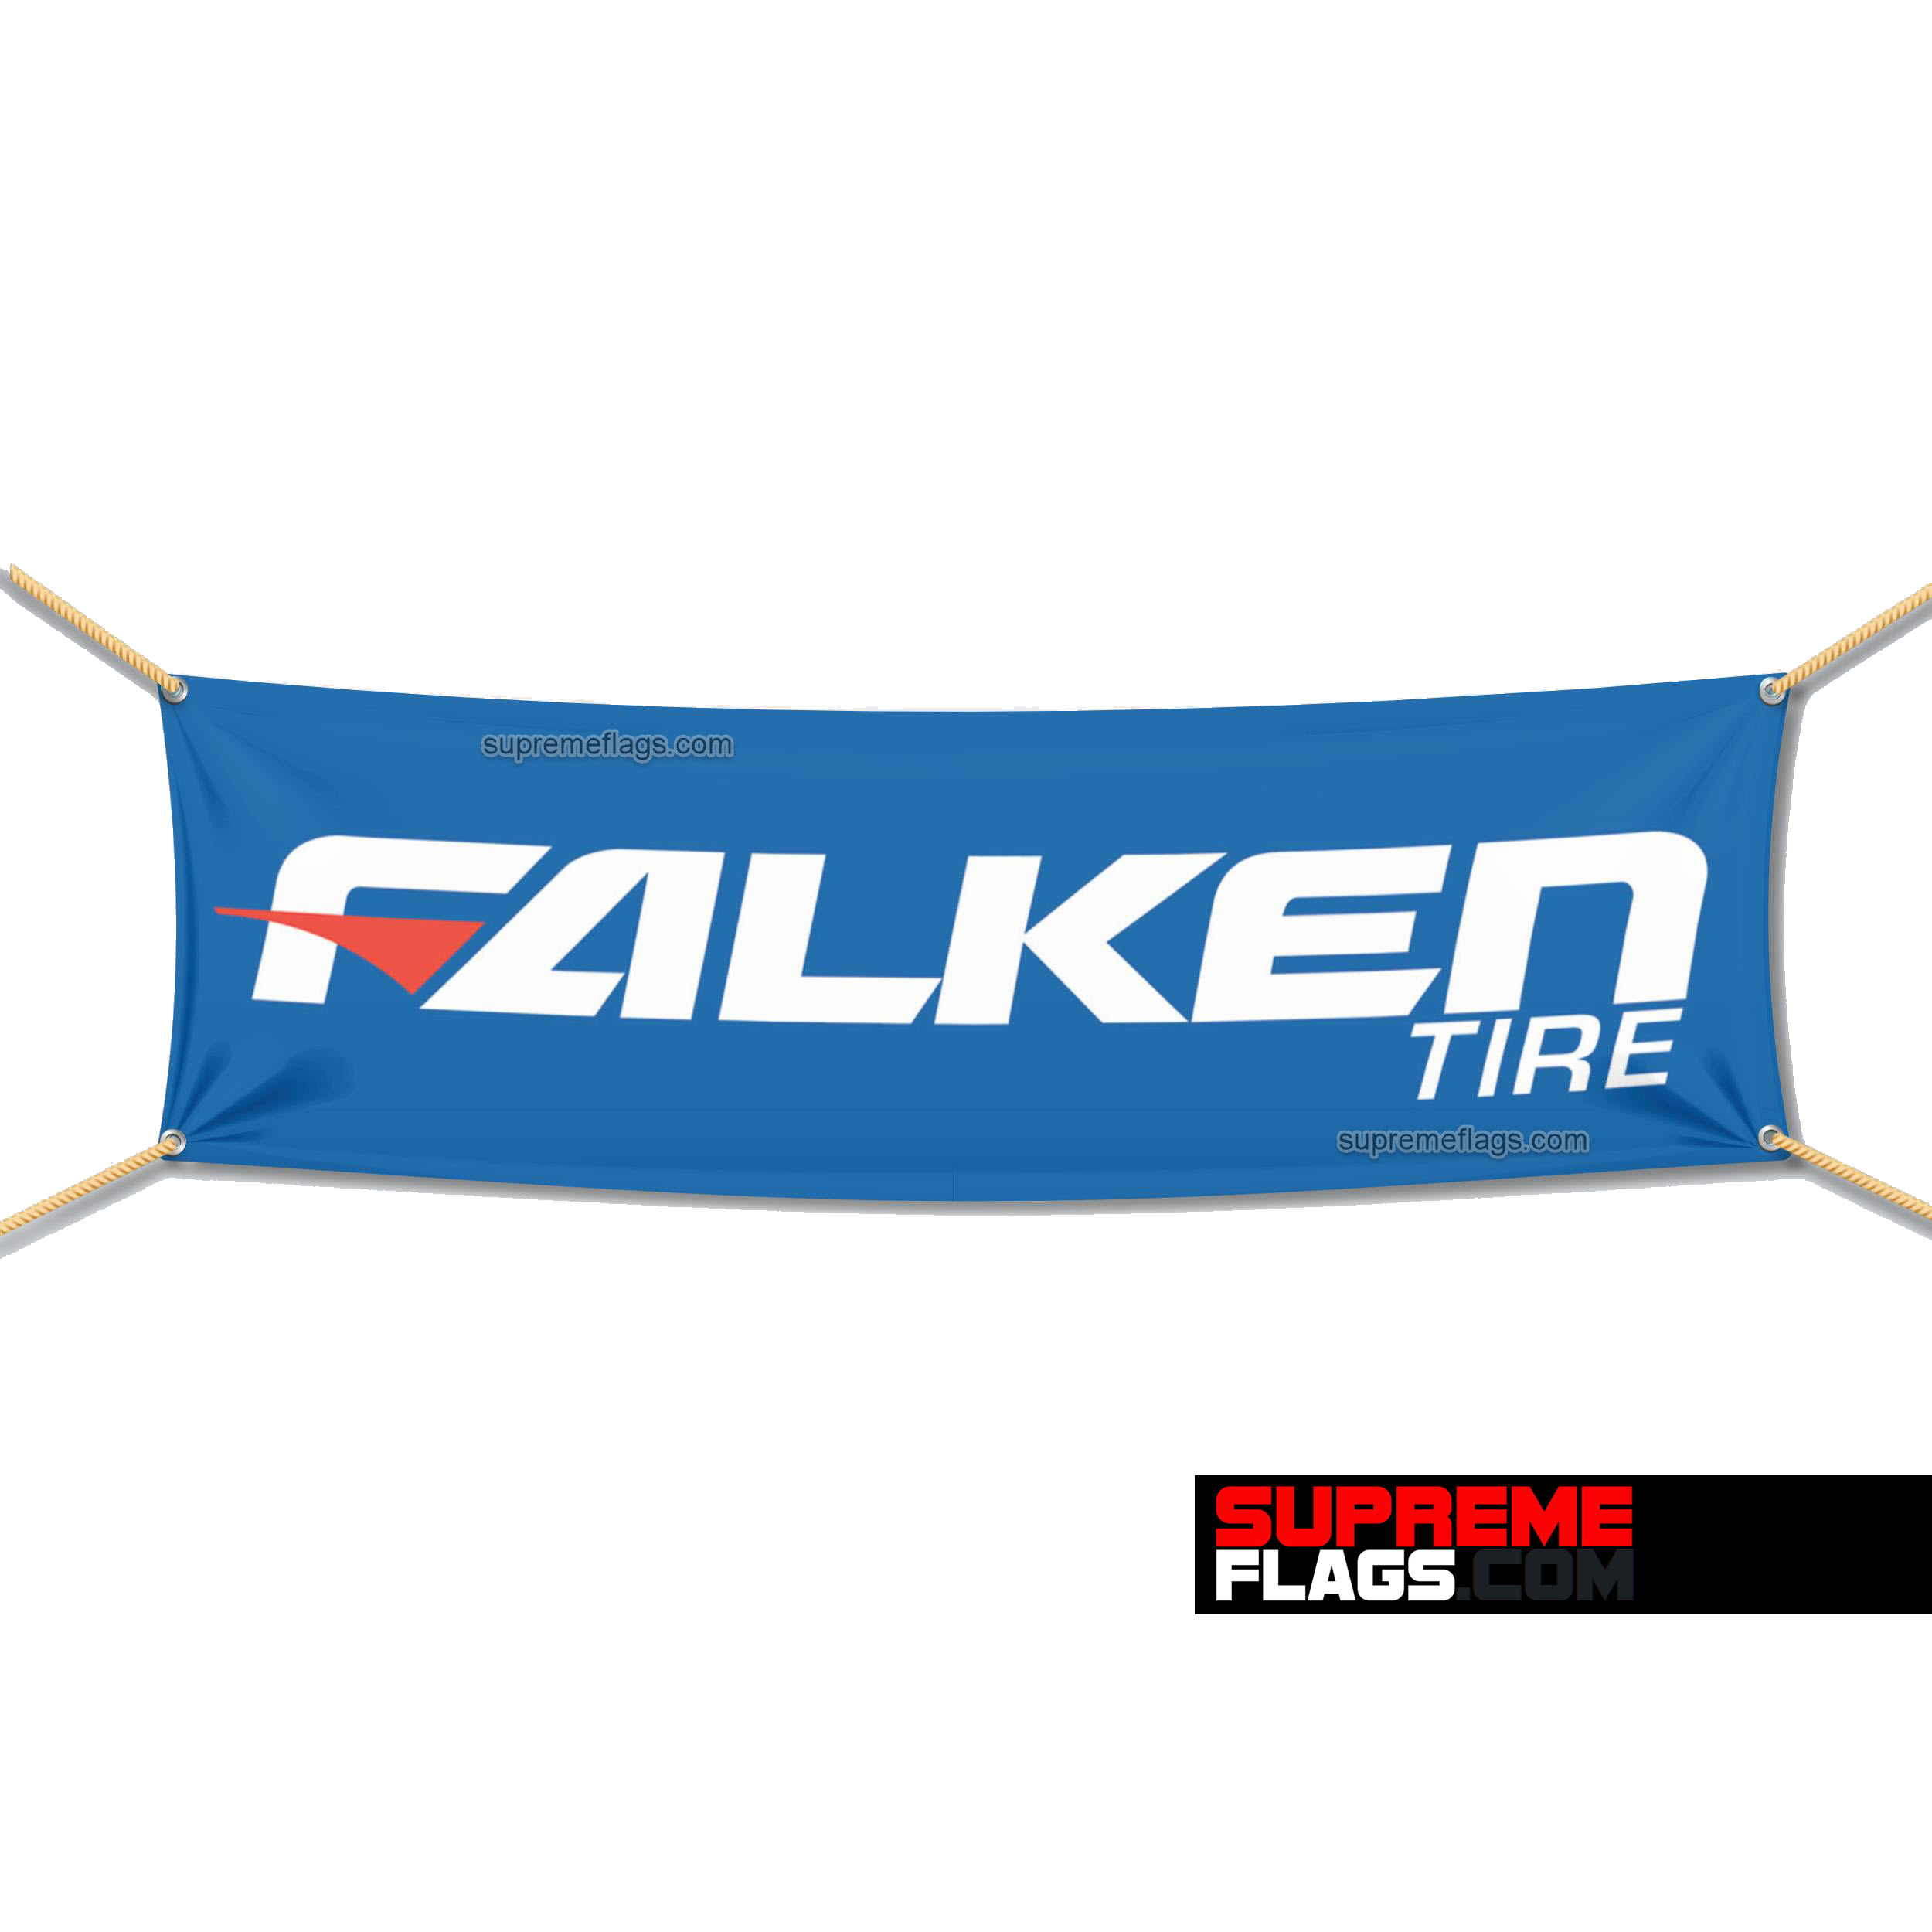 falken-tire-flag-1-5x5-ft-3041